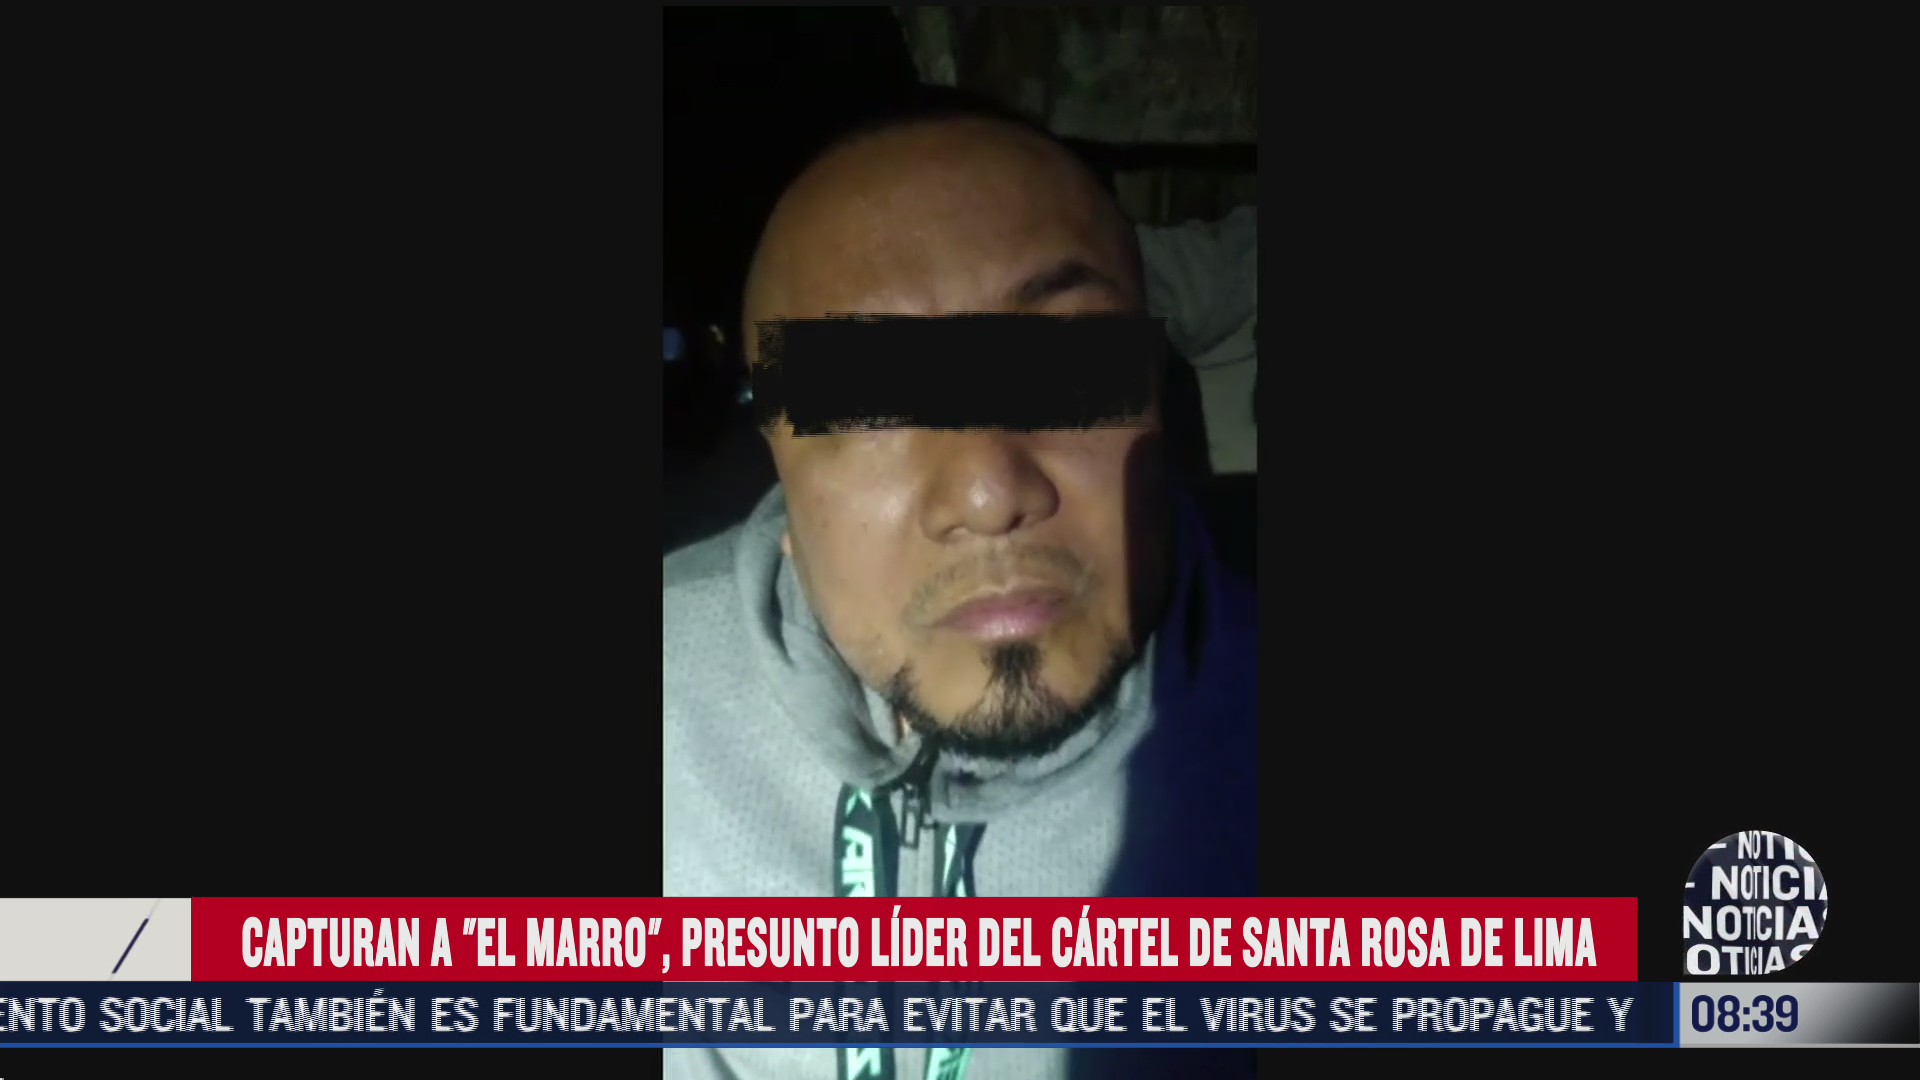 FOTO: 2 de agosto 2020, video interrogan a el marro tras su captura en guanajuato